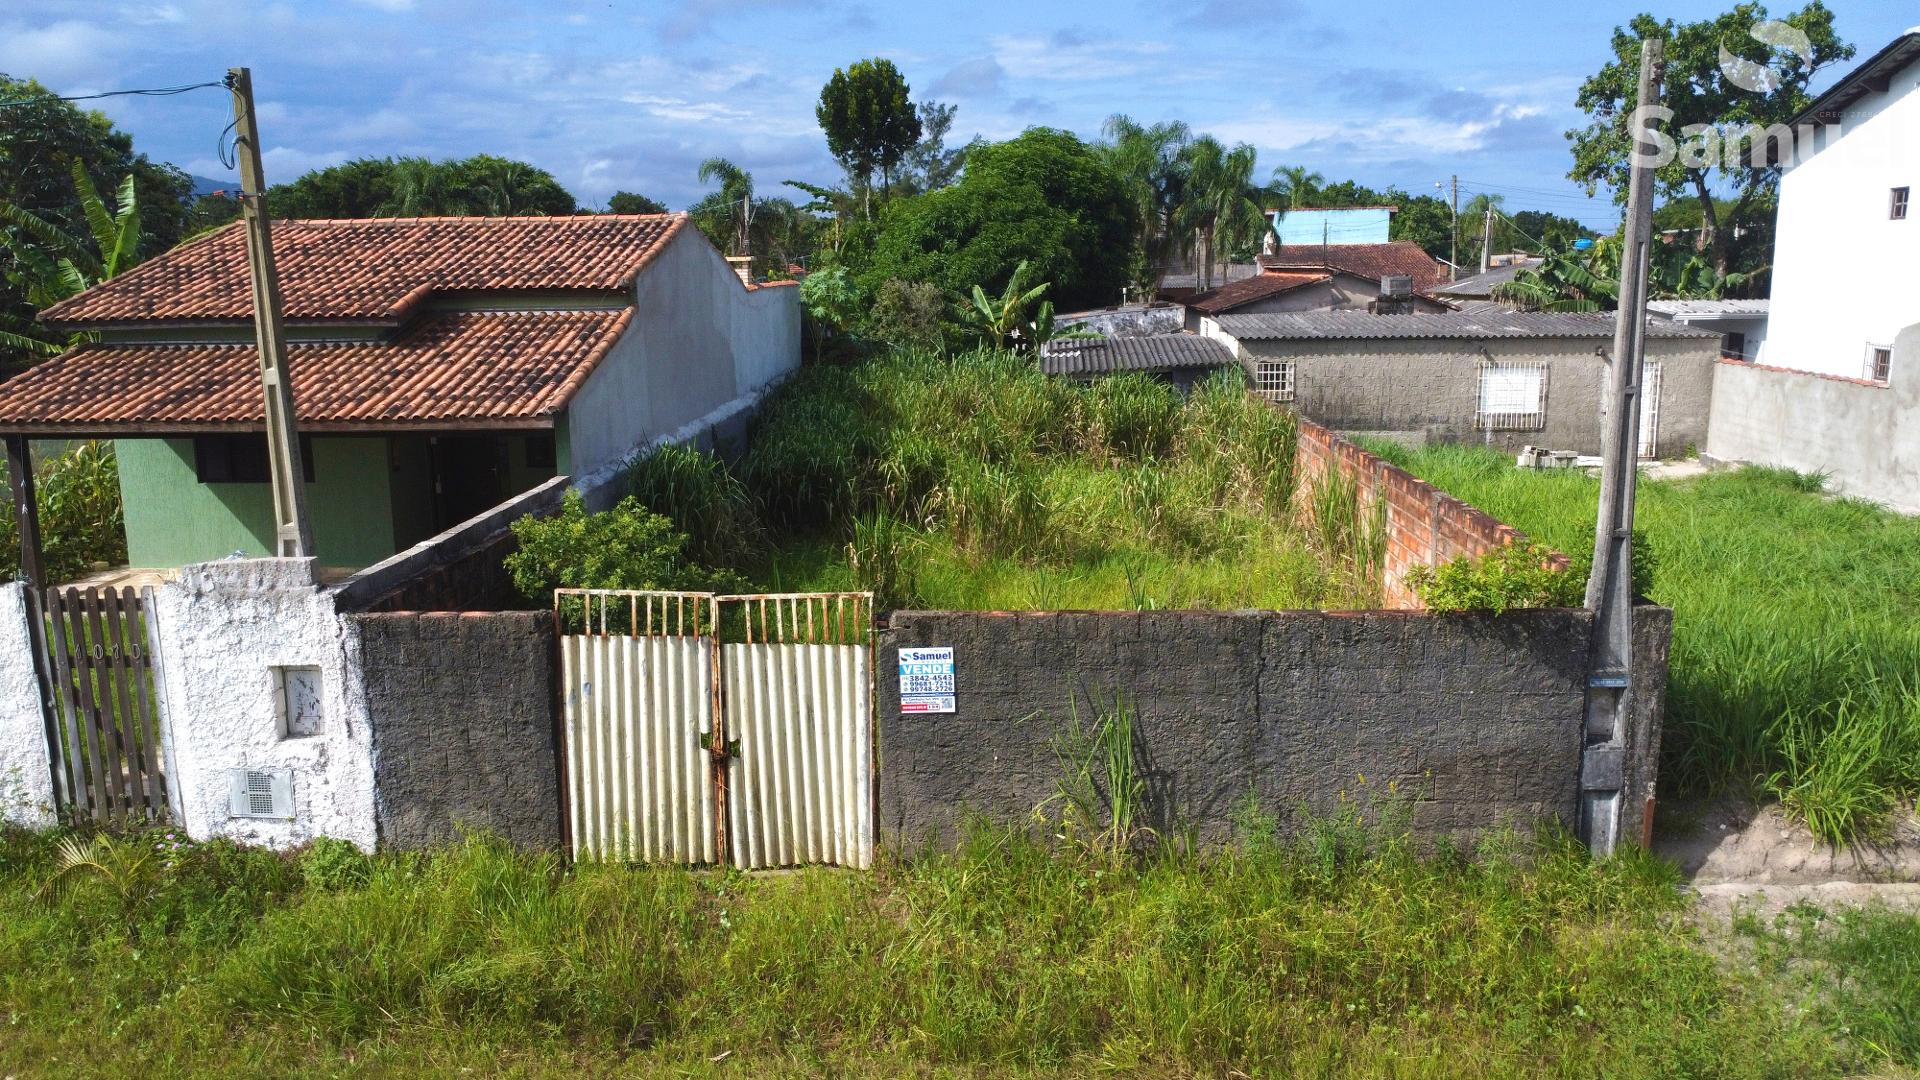 Terreno murado e com poste de luz, próximo à Av Candapuí Sul